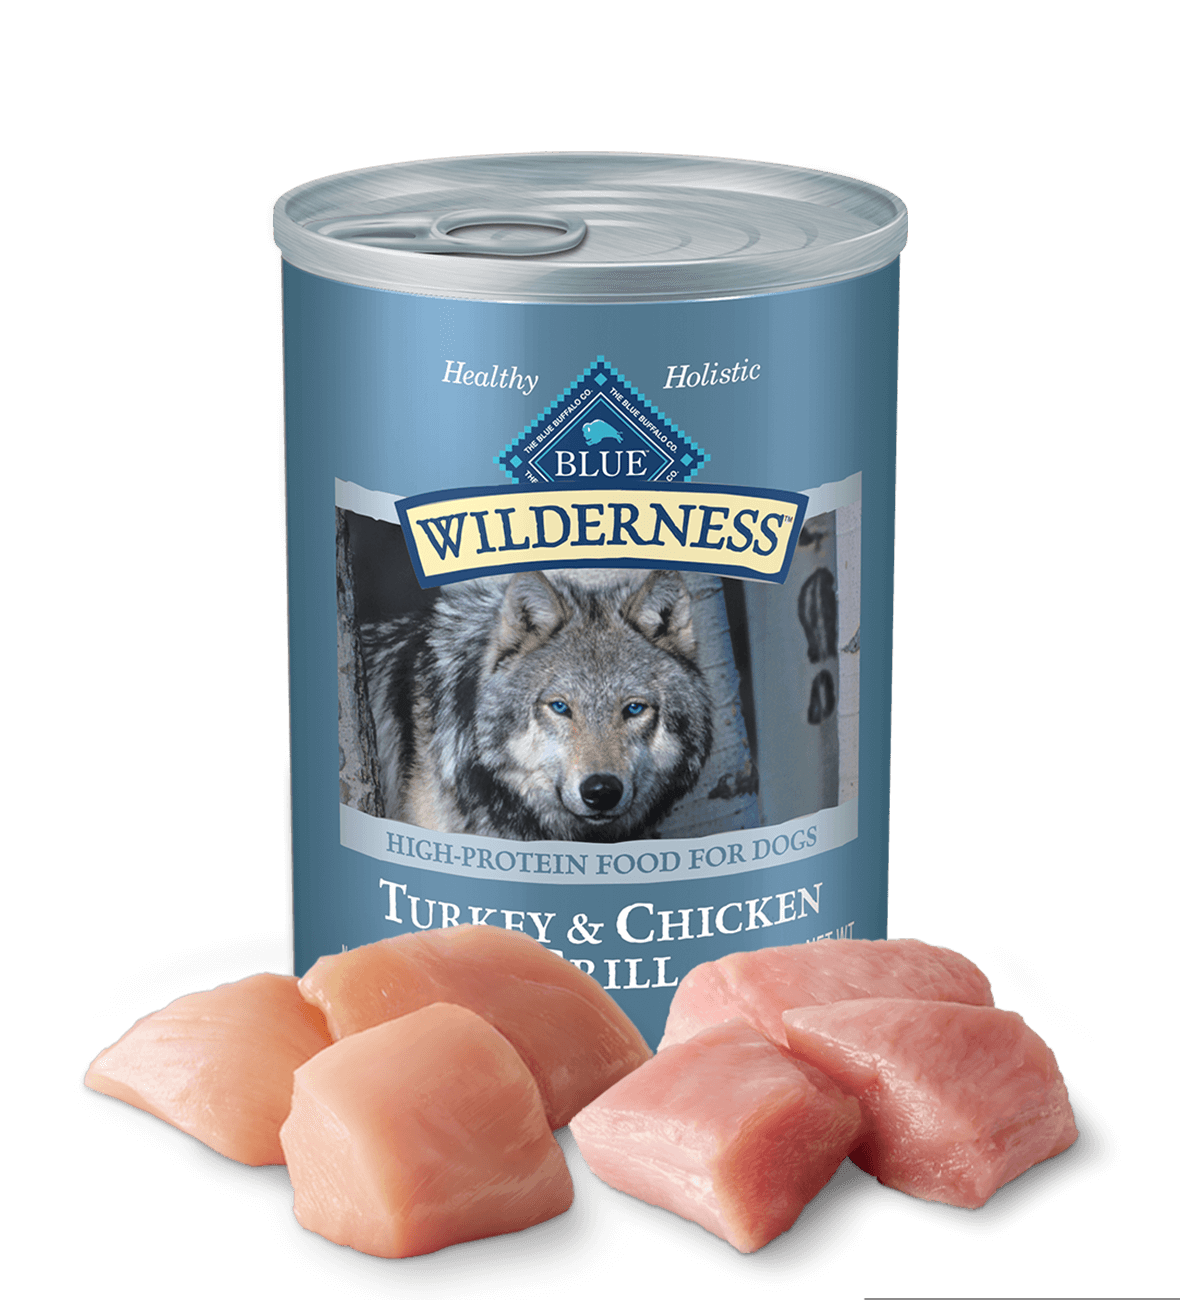 blue wilderness turkey & chicken grill dog wet food